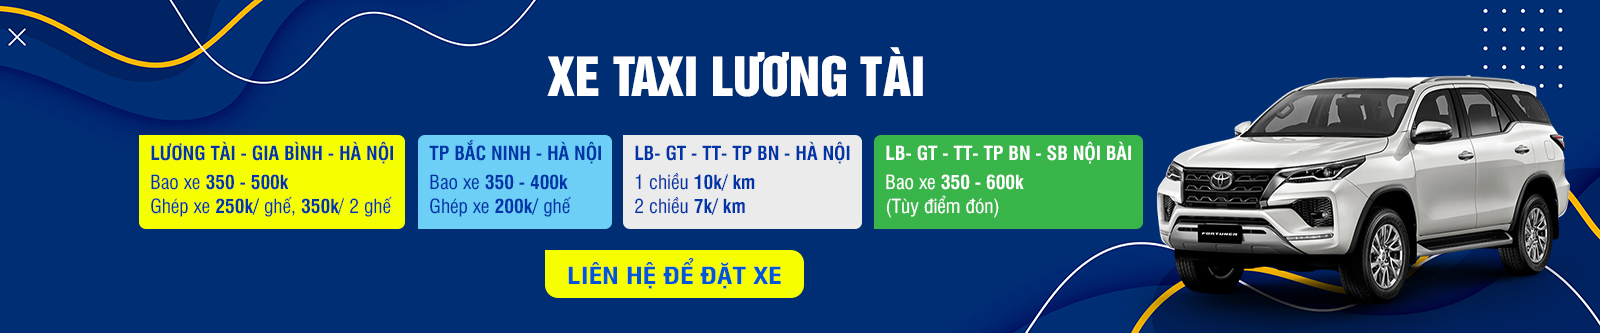 Xe ghép Lương Tài 844 tuyến Bắc Ninh - Hà Nội